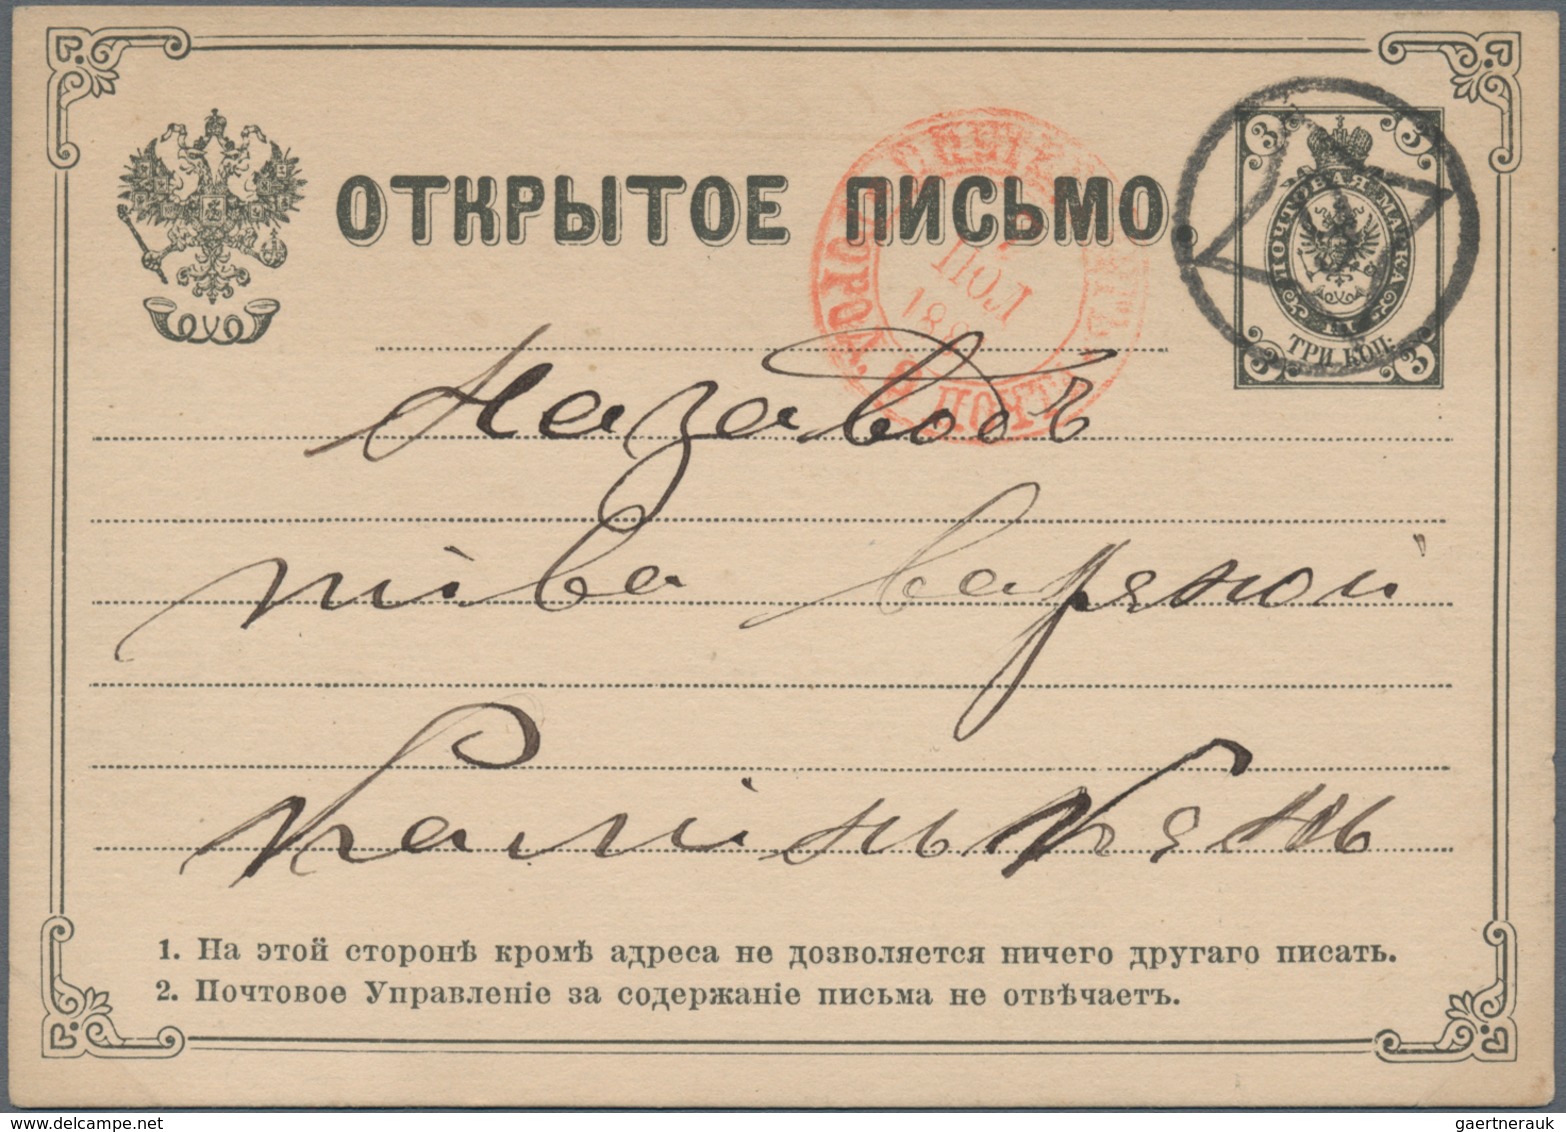 Russland - Ganzsachen: 1878/1916 holding of about 130 postal stationery postcards, envelopes, letter